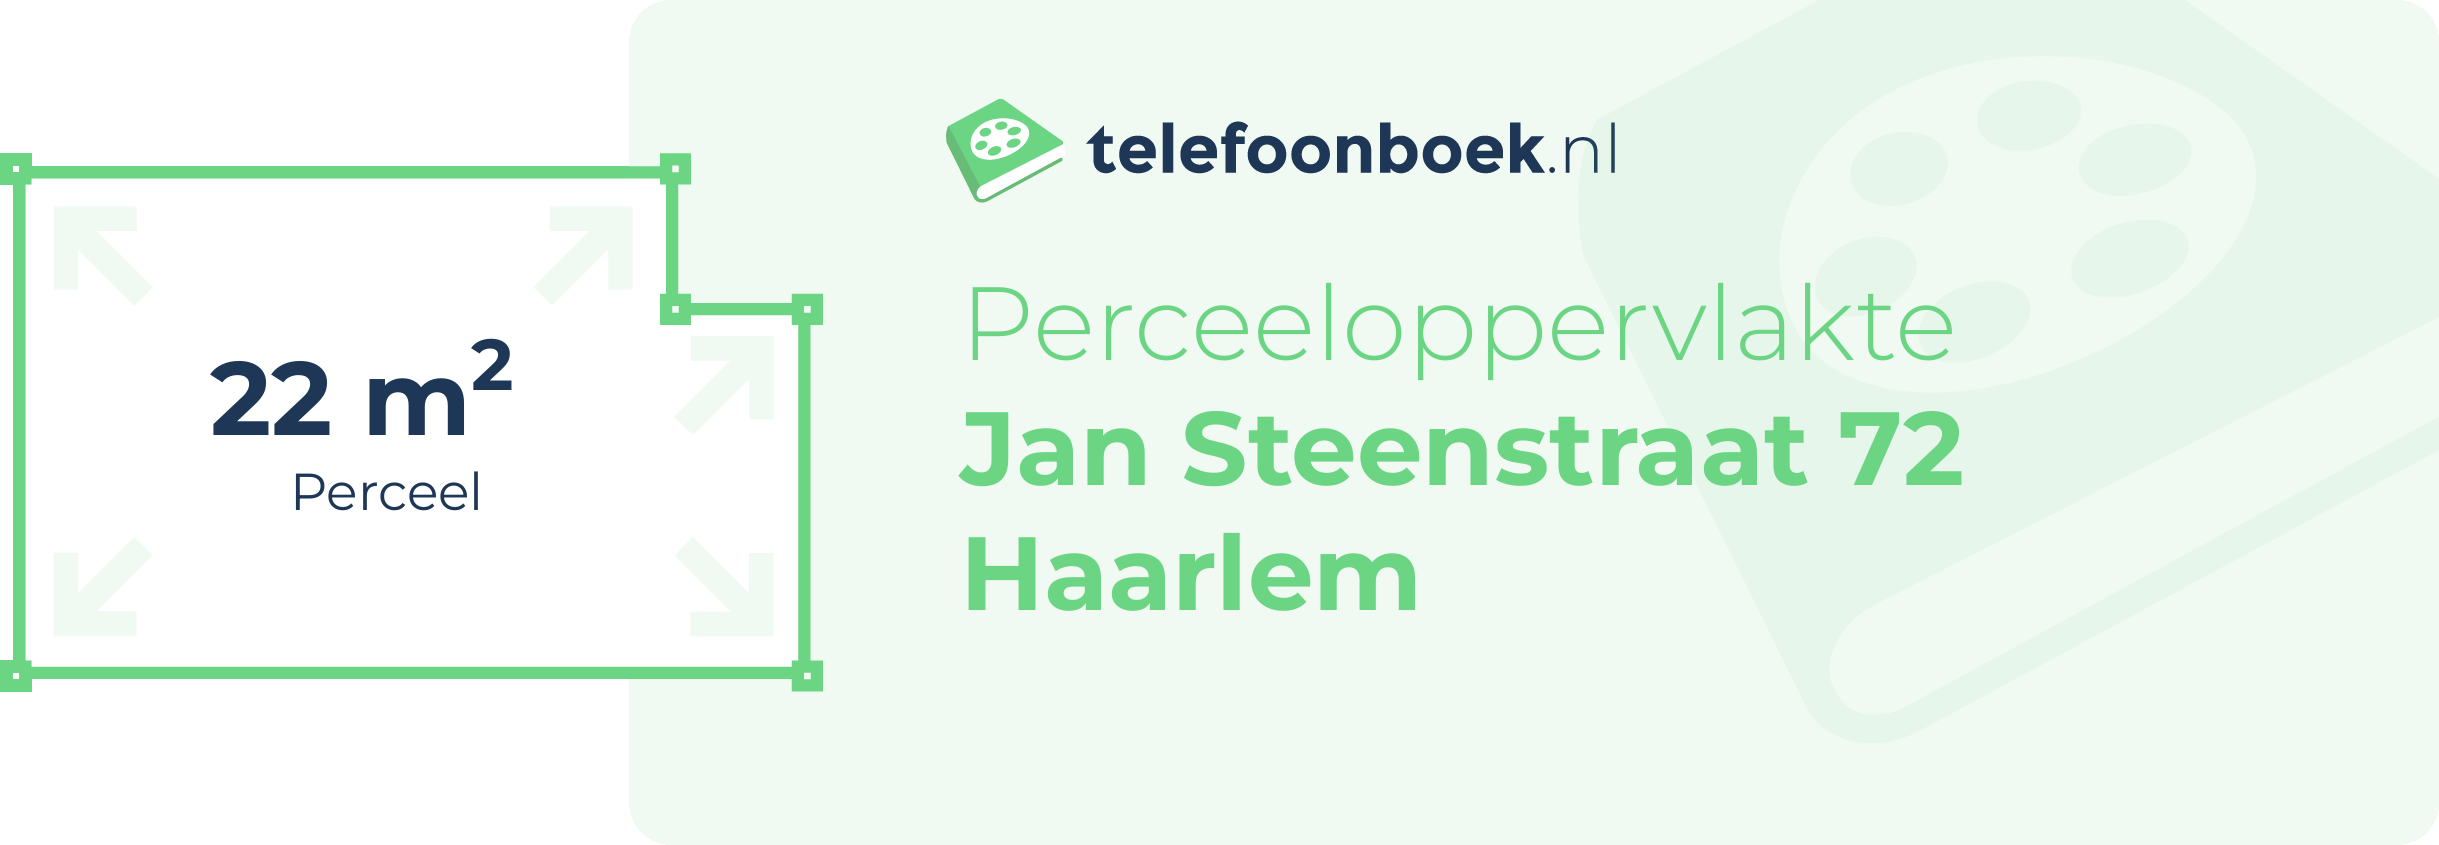 Perceeloppervlakte Jan Steenstraat 72 Haarlem